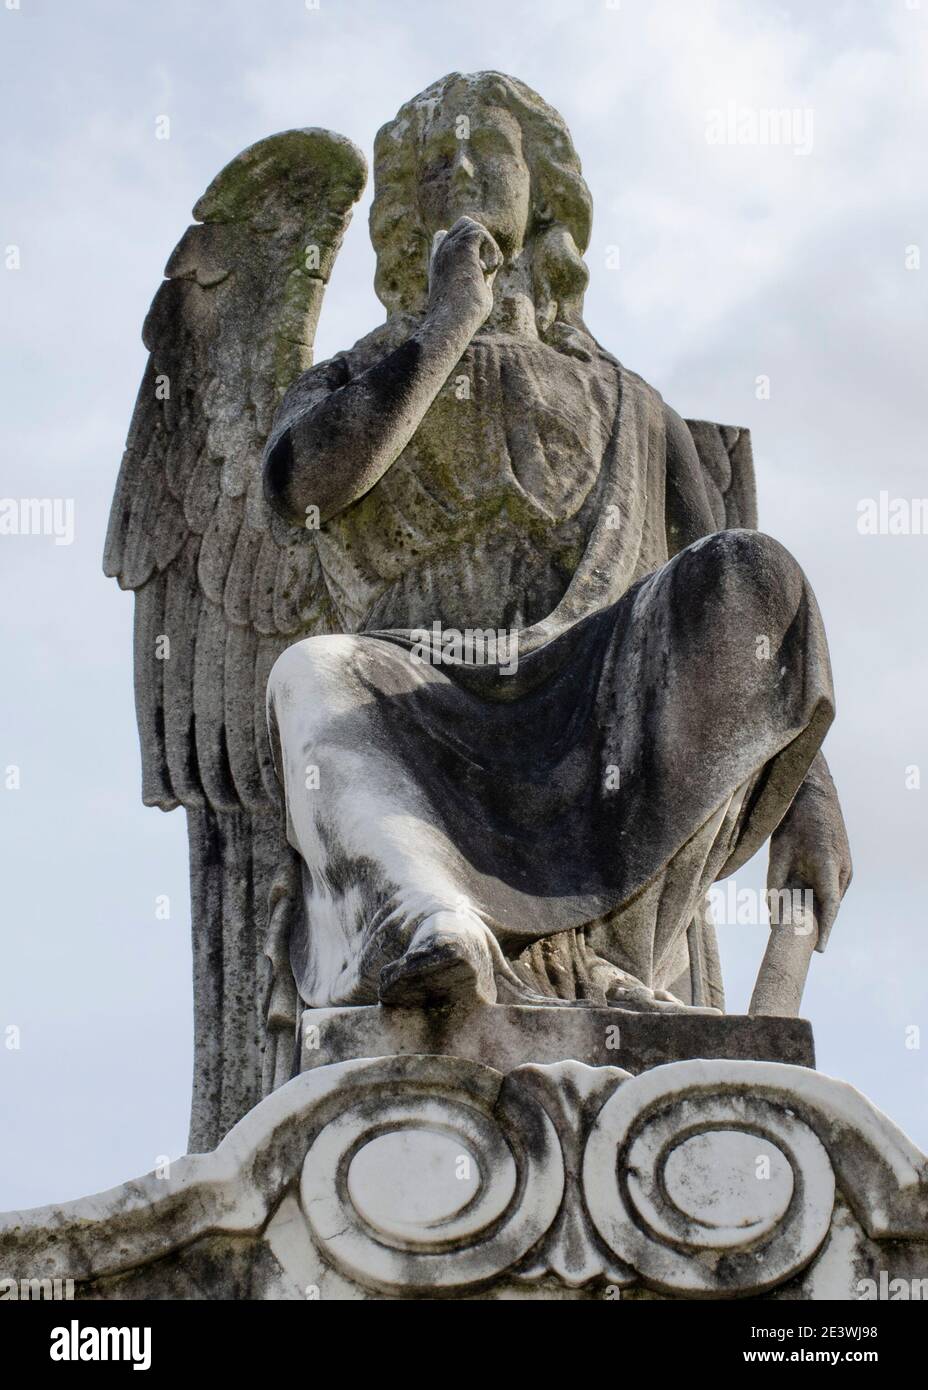 3 de noviembre de 2014, Nueva Orleans, Louisiana, EE.UU.: Ángel descansando sobre una tumba en el Cementerio Lafayette no.1 en el barrio Garden District. (Imagen de crédito: © Billy Bennight/ZUMA Wire) Foto de stock